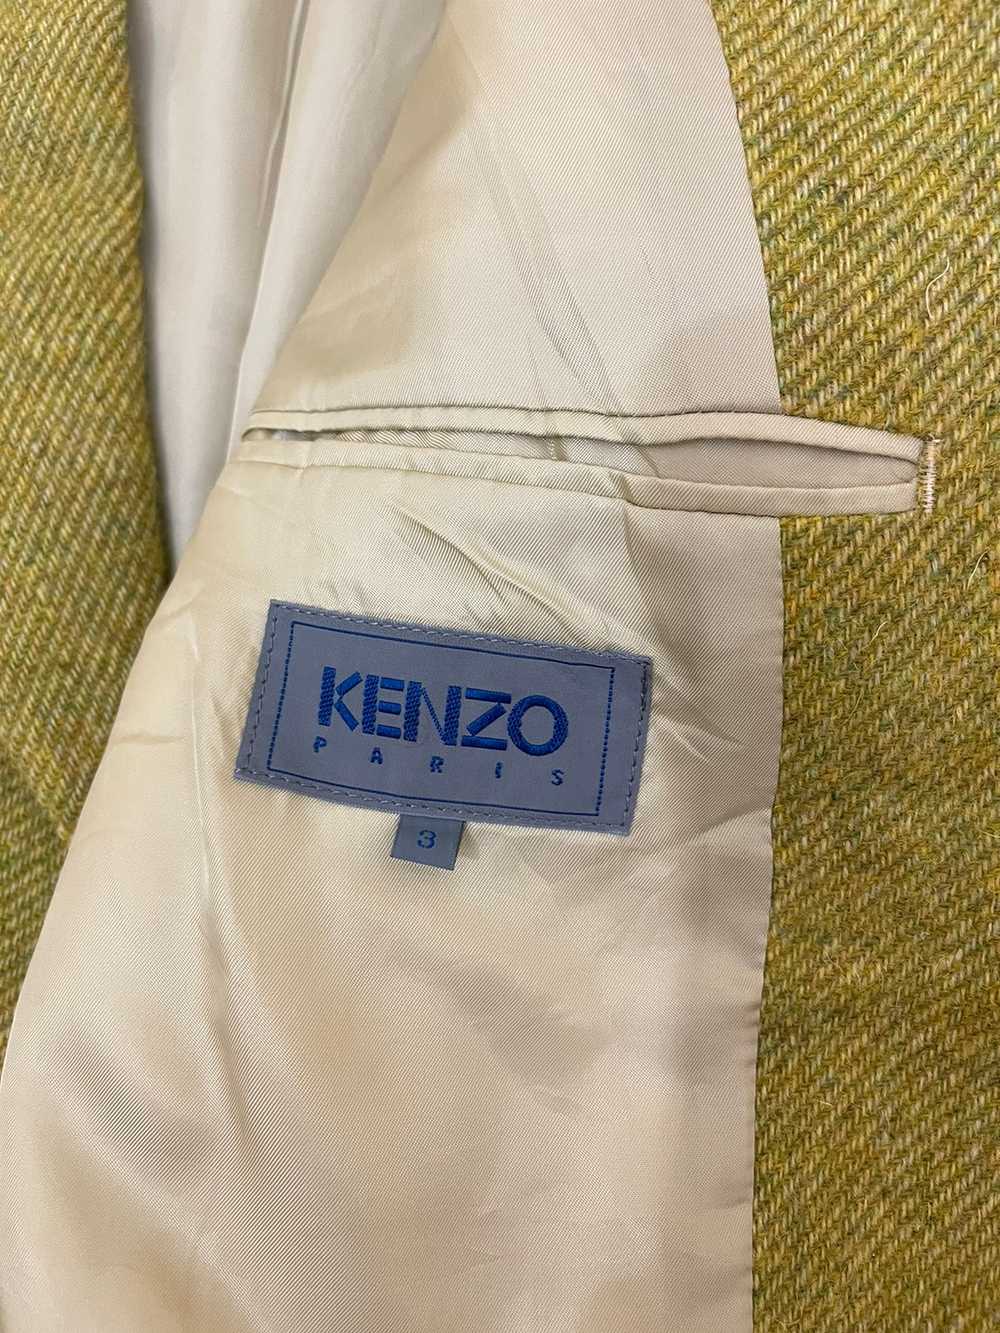 Vintage - Vintage Kenzo Wool balzer - image 6